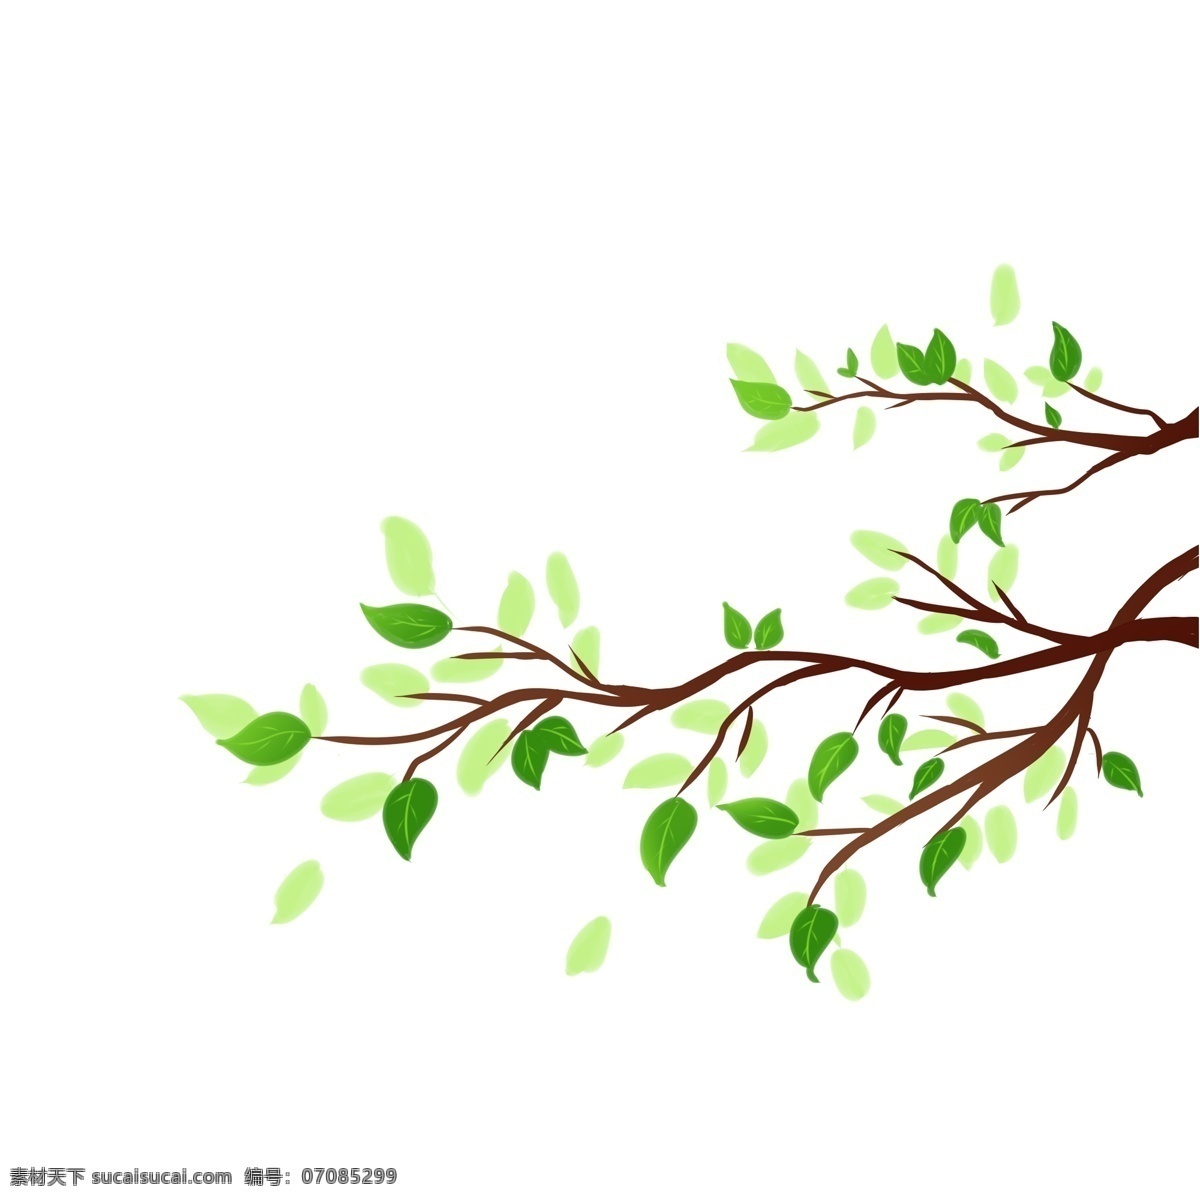 绿化 树枝 手绘 绿叶 叶子 树木 树苗 种树 植树 种植 春天 背景装饰 海报装饰 漂浮 小清新